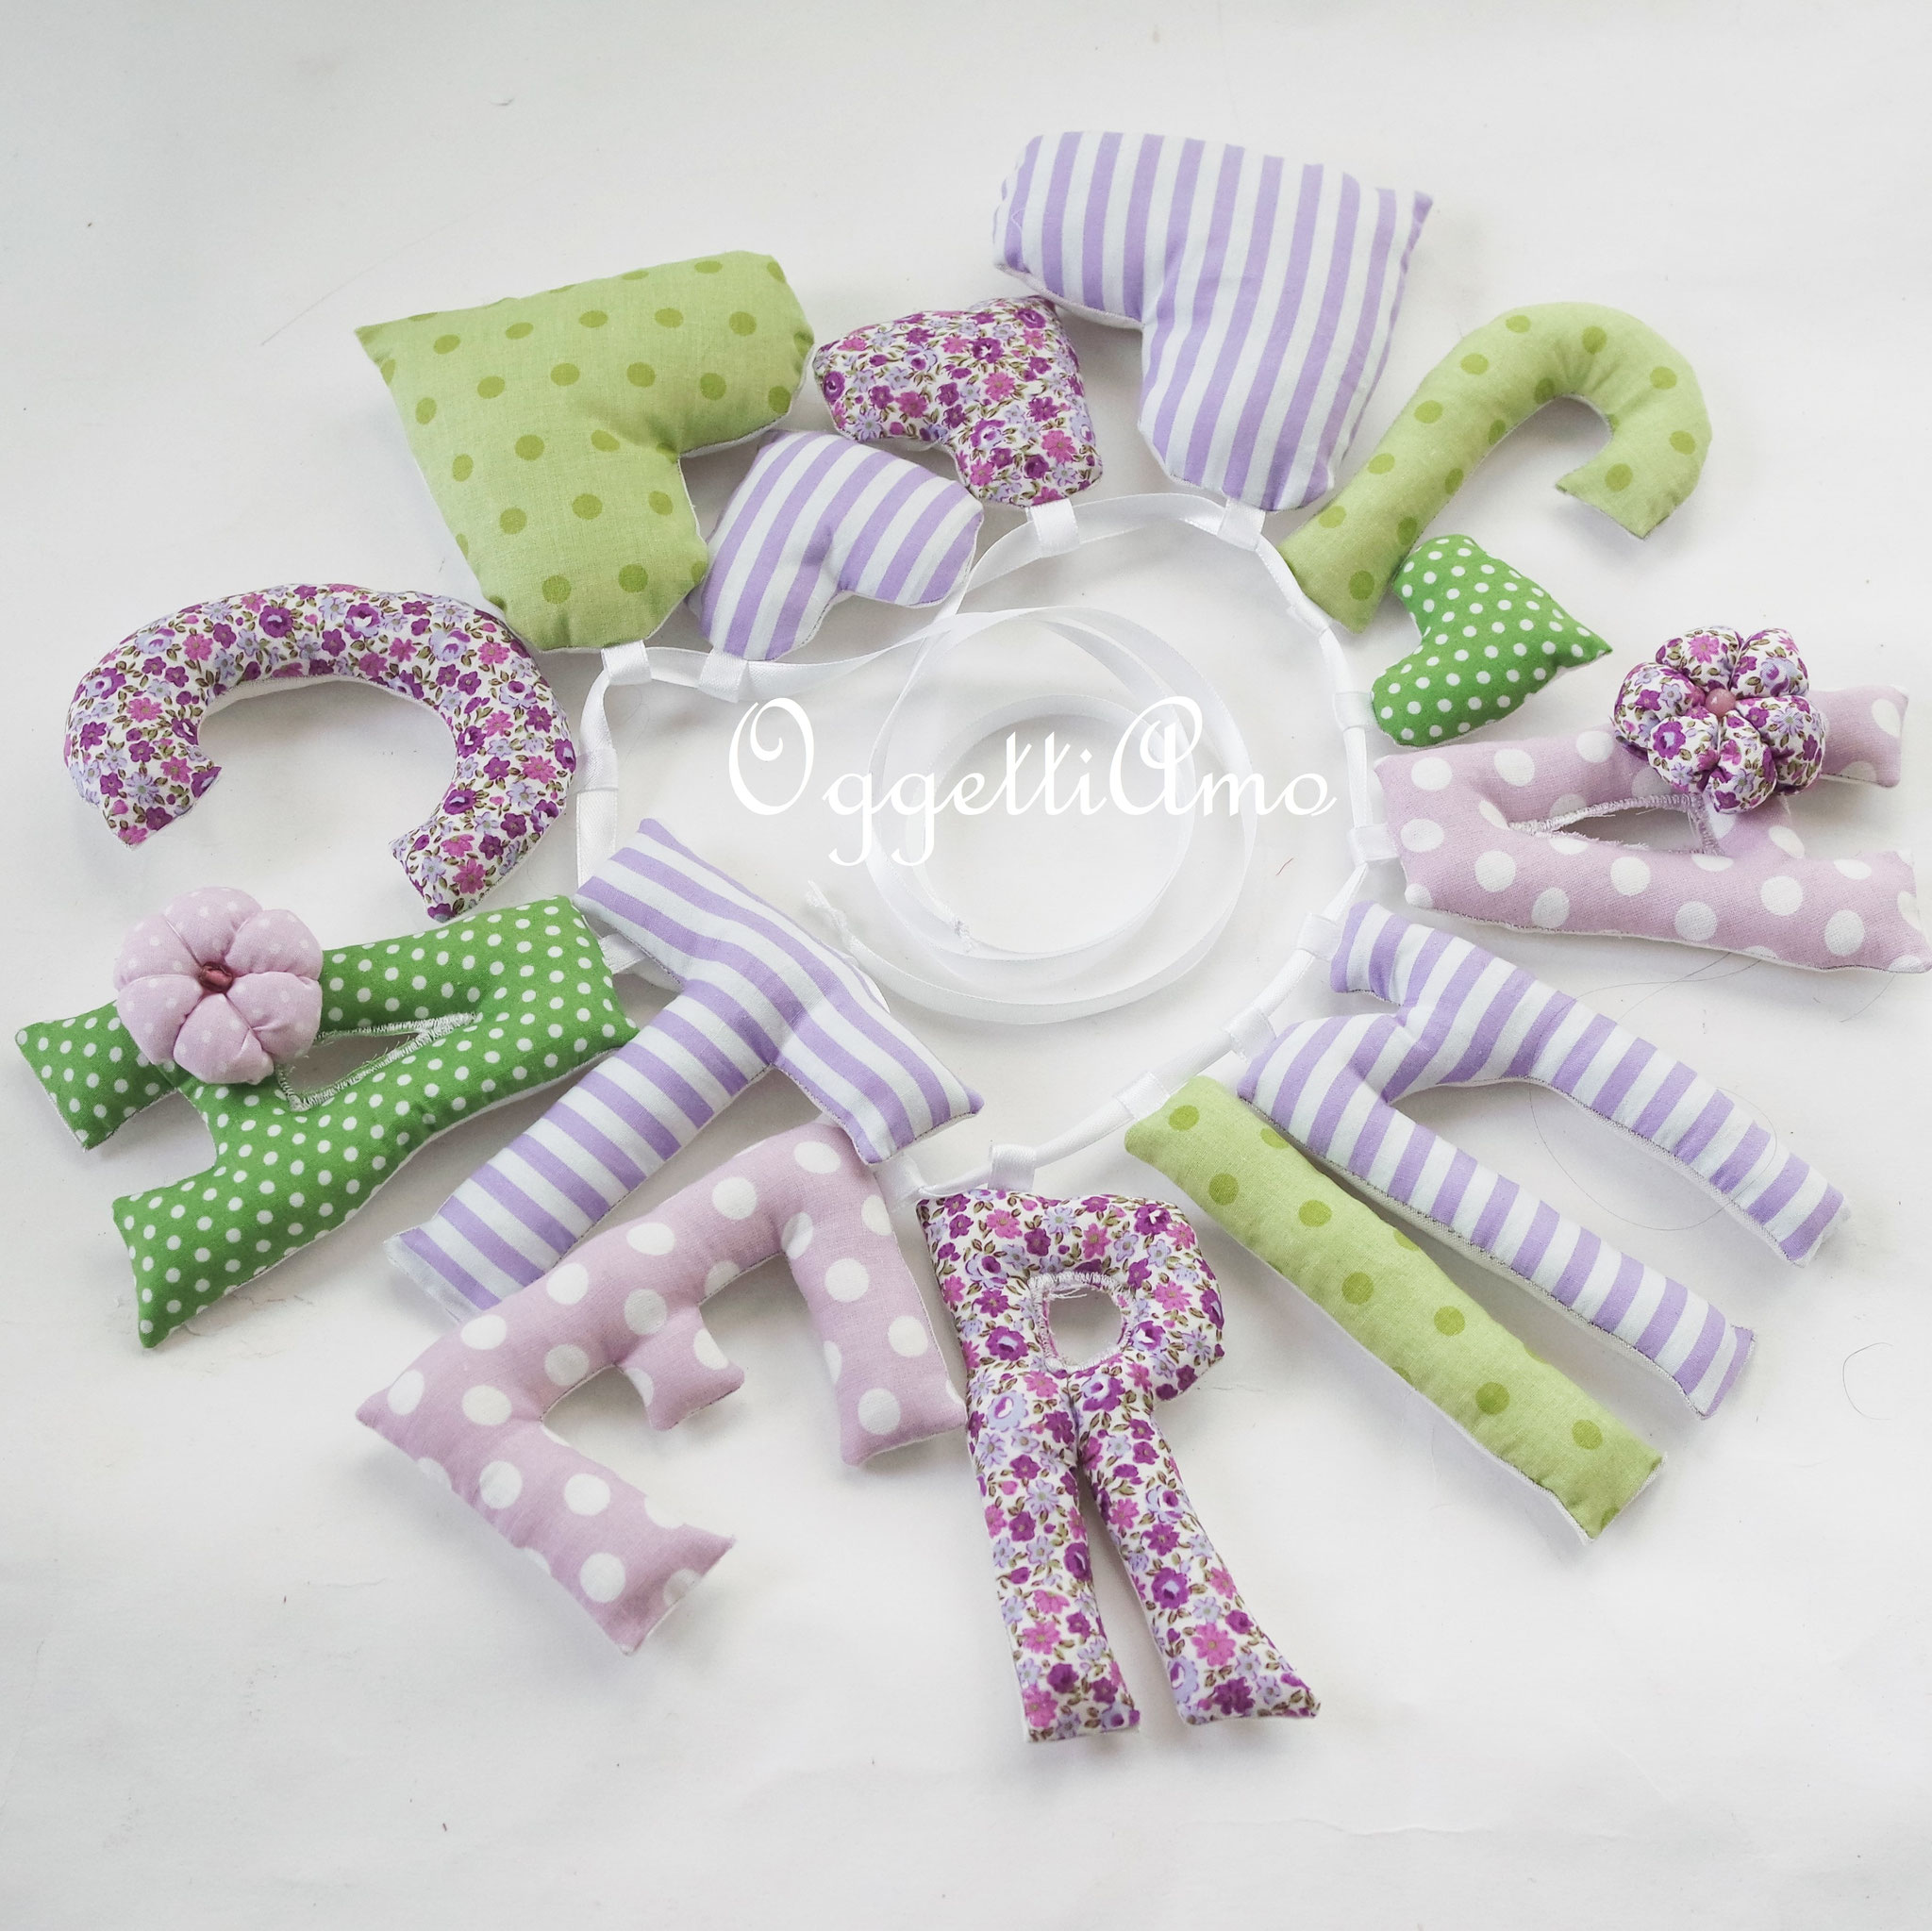 Una ghirlanda di lettere imbottite lilla, viola e verdi decorata con cuoricini per la piccola Caterina